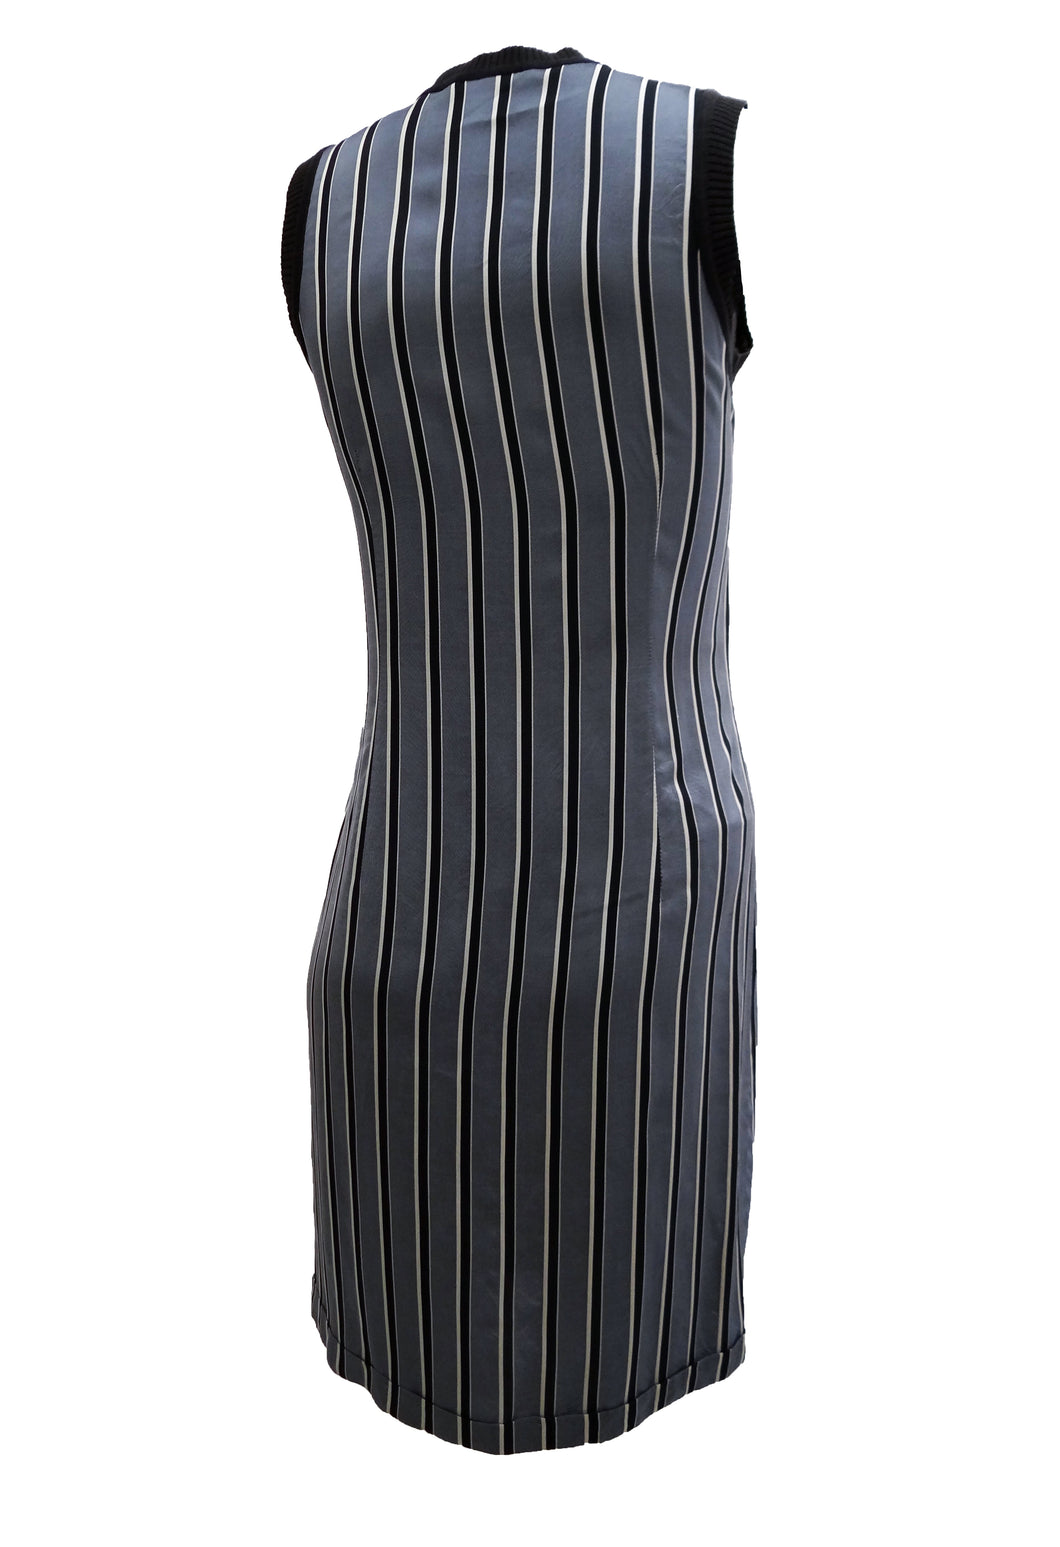 Dries van Noten Striped Tank Dress, UK10 – Menage Modern Vintage